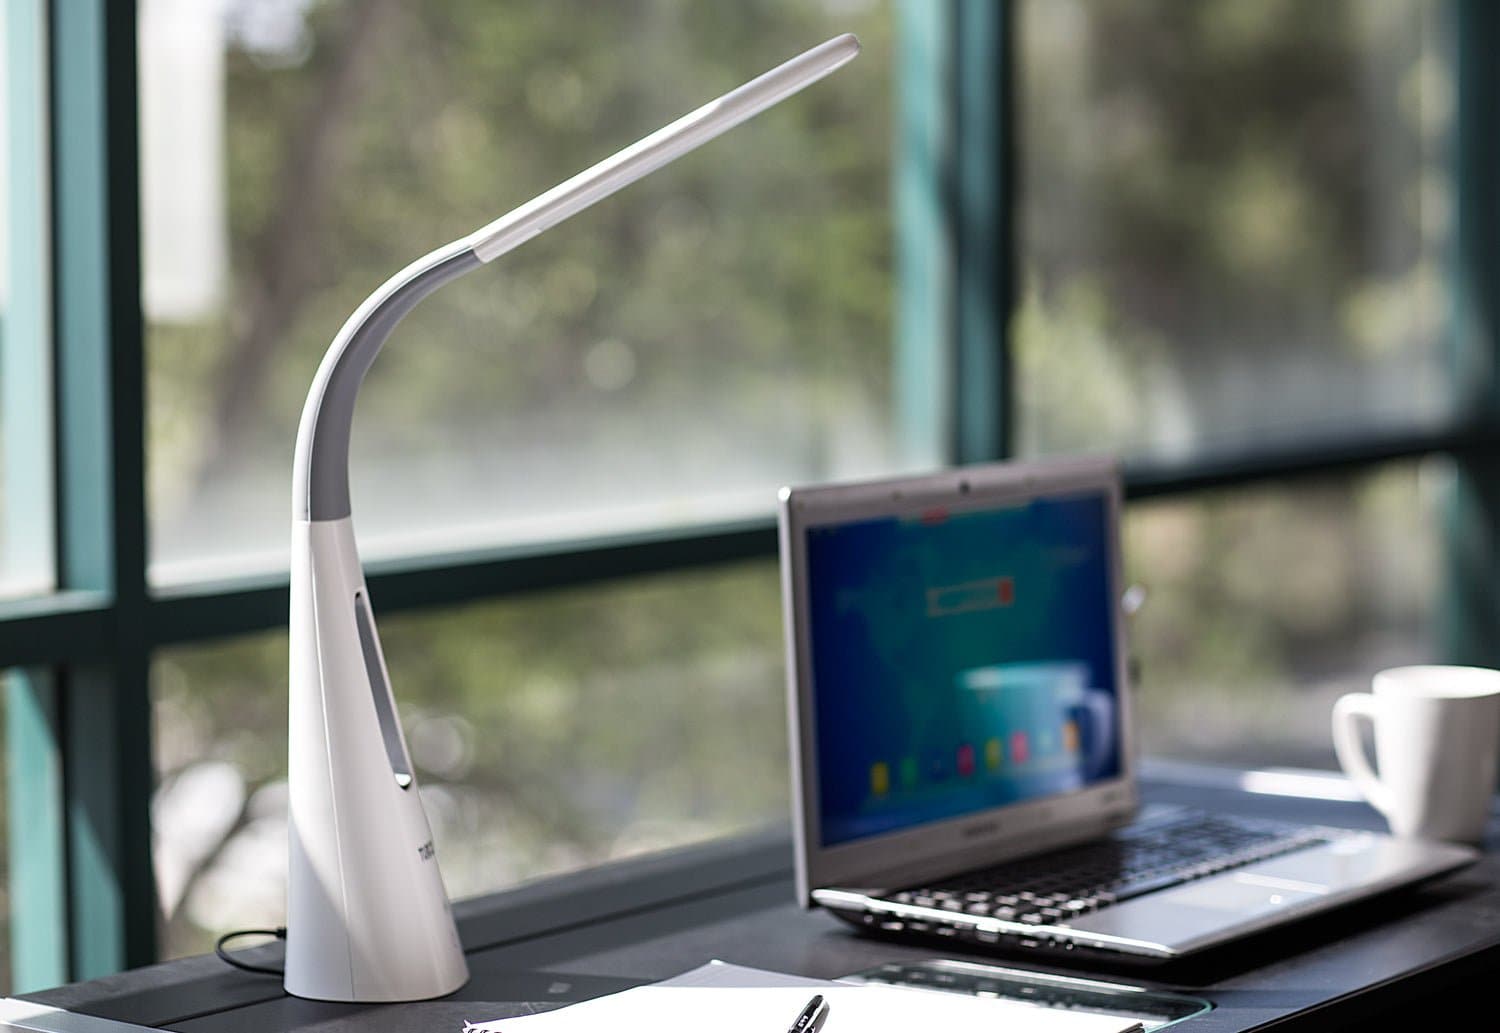 Turcom AirLight Ultralight LED Desk Lamp - Mount-It!